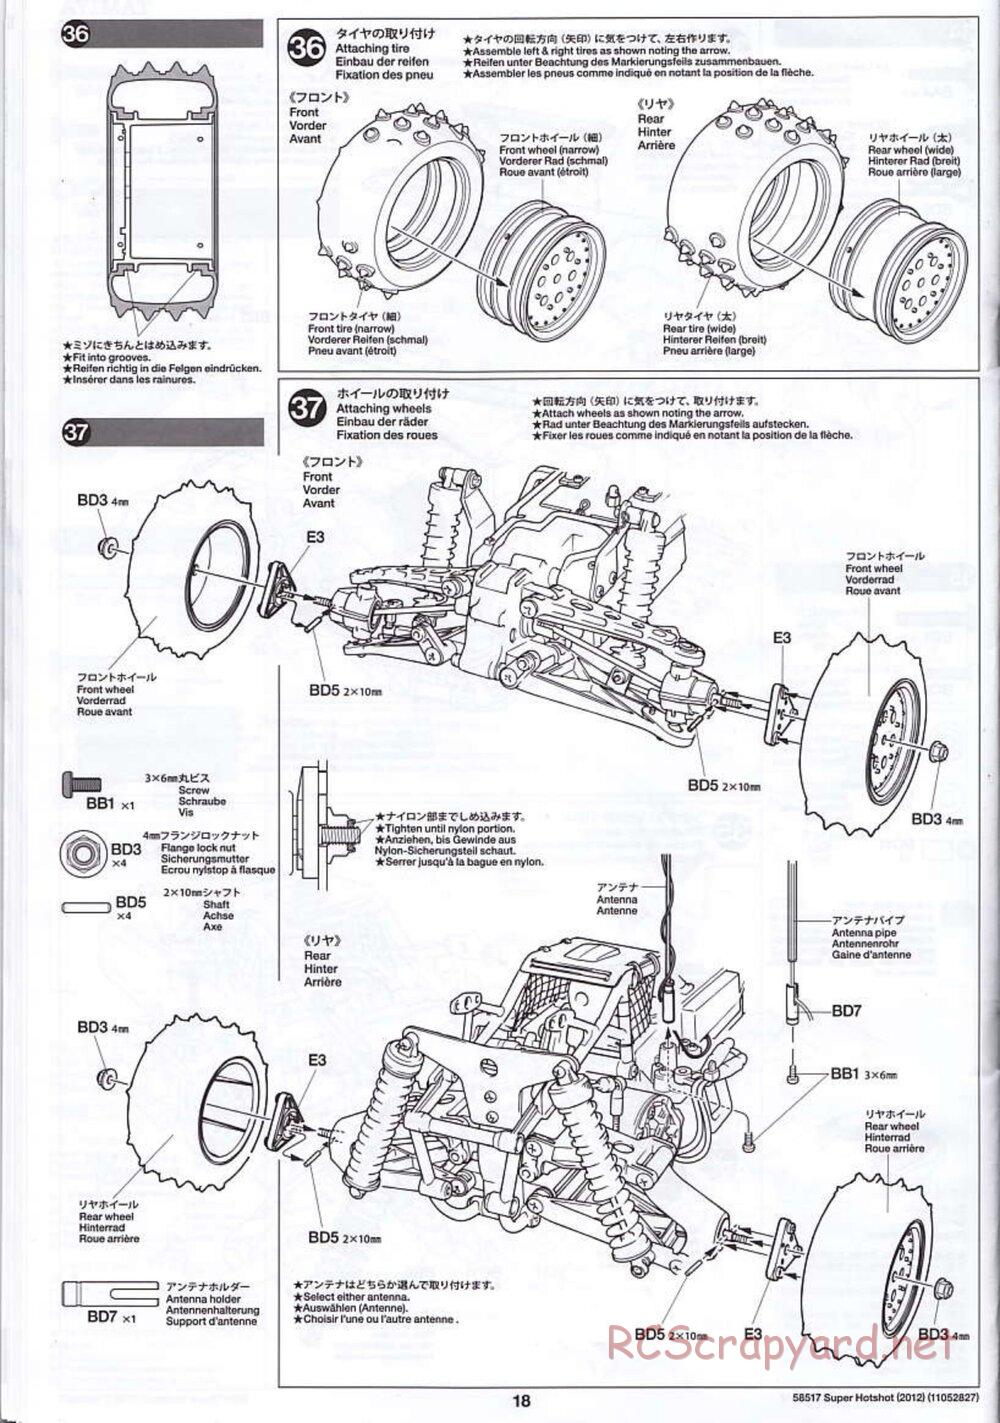 Tamiya - Super Hotshot 2012 - HS Chassis - Manual - Page 18